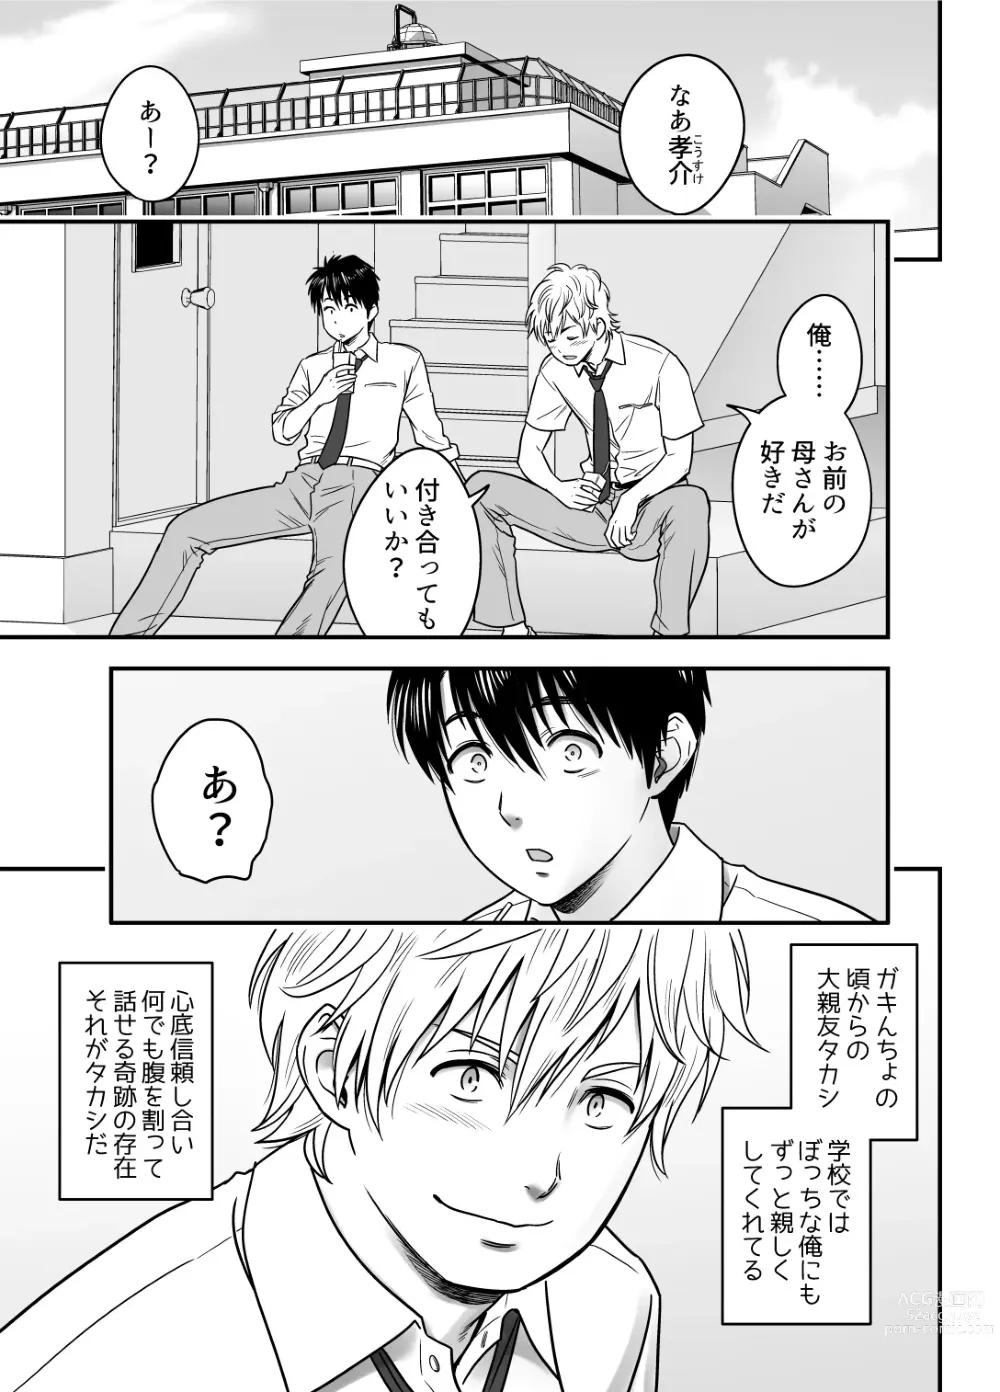 Page 3 of doujinshi Haha ga TomoKano ni Natta node